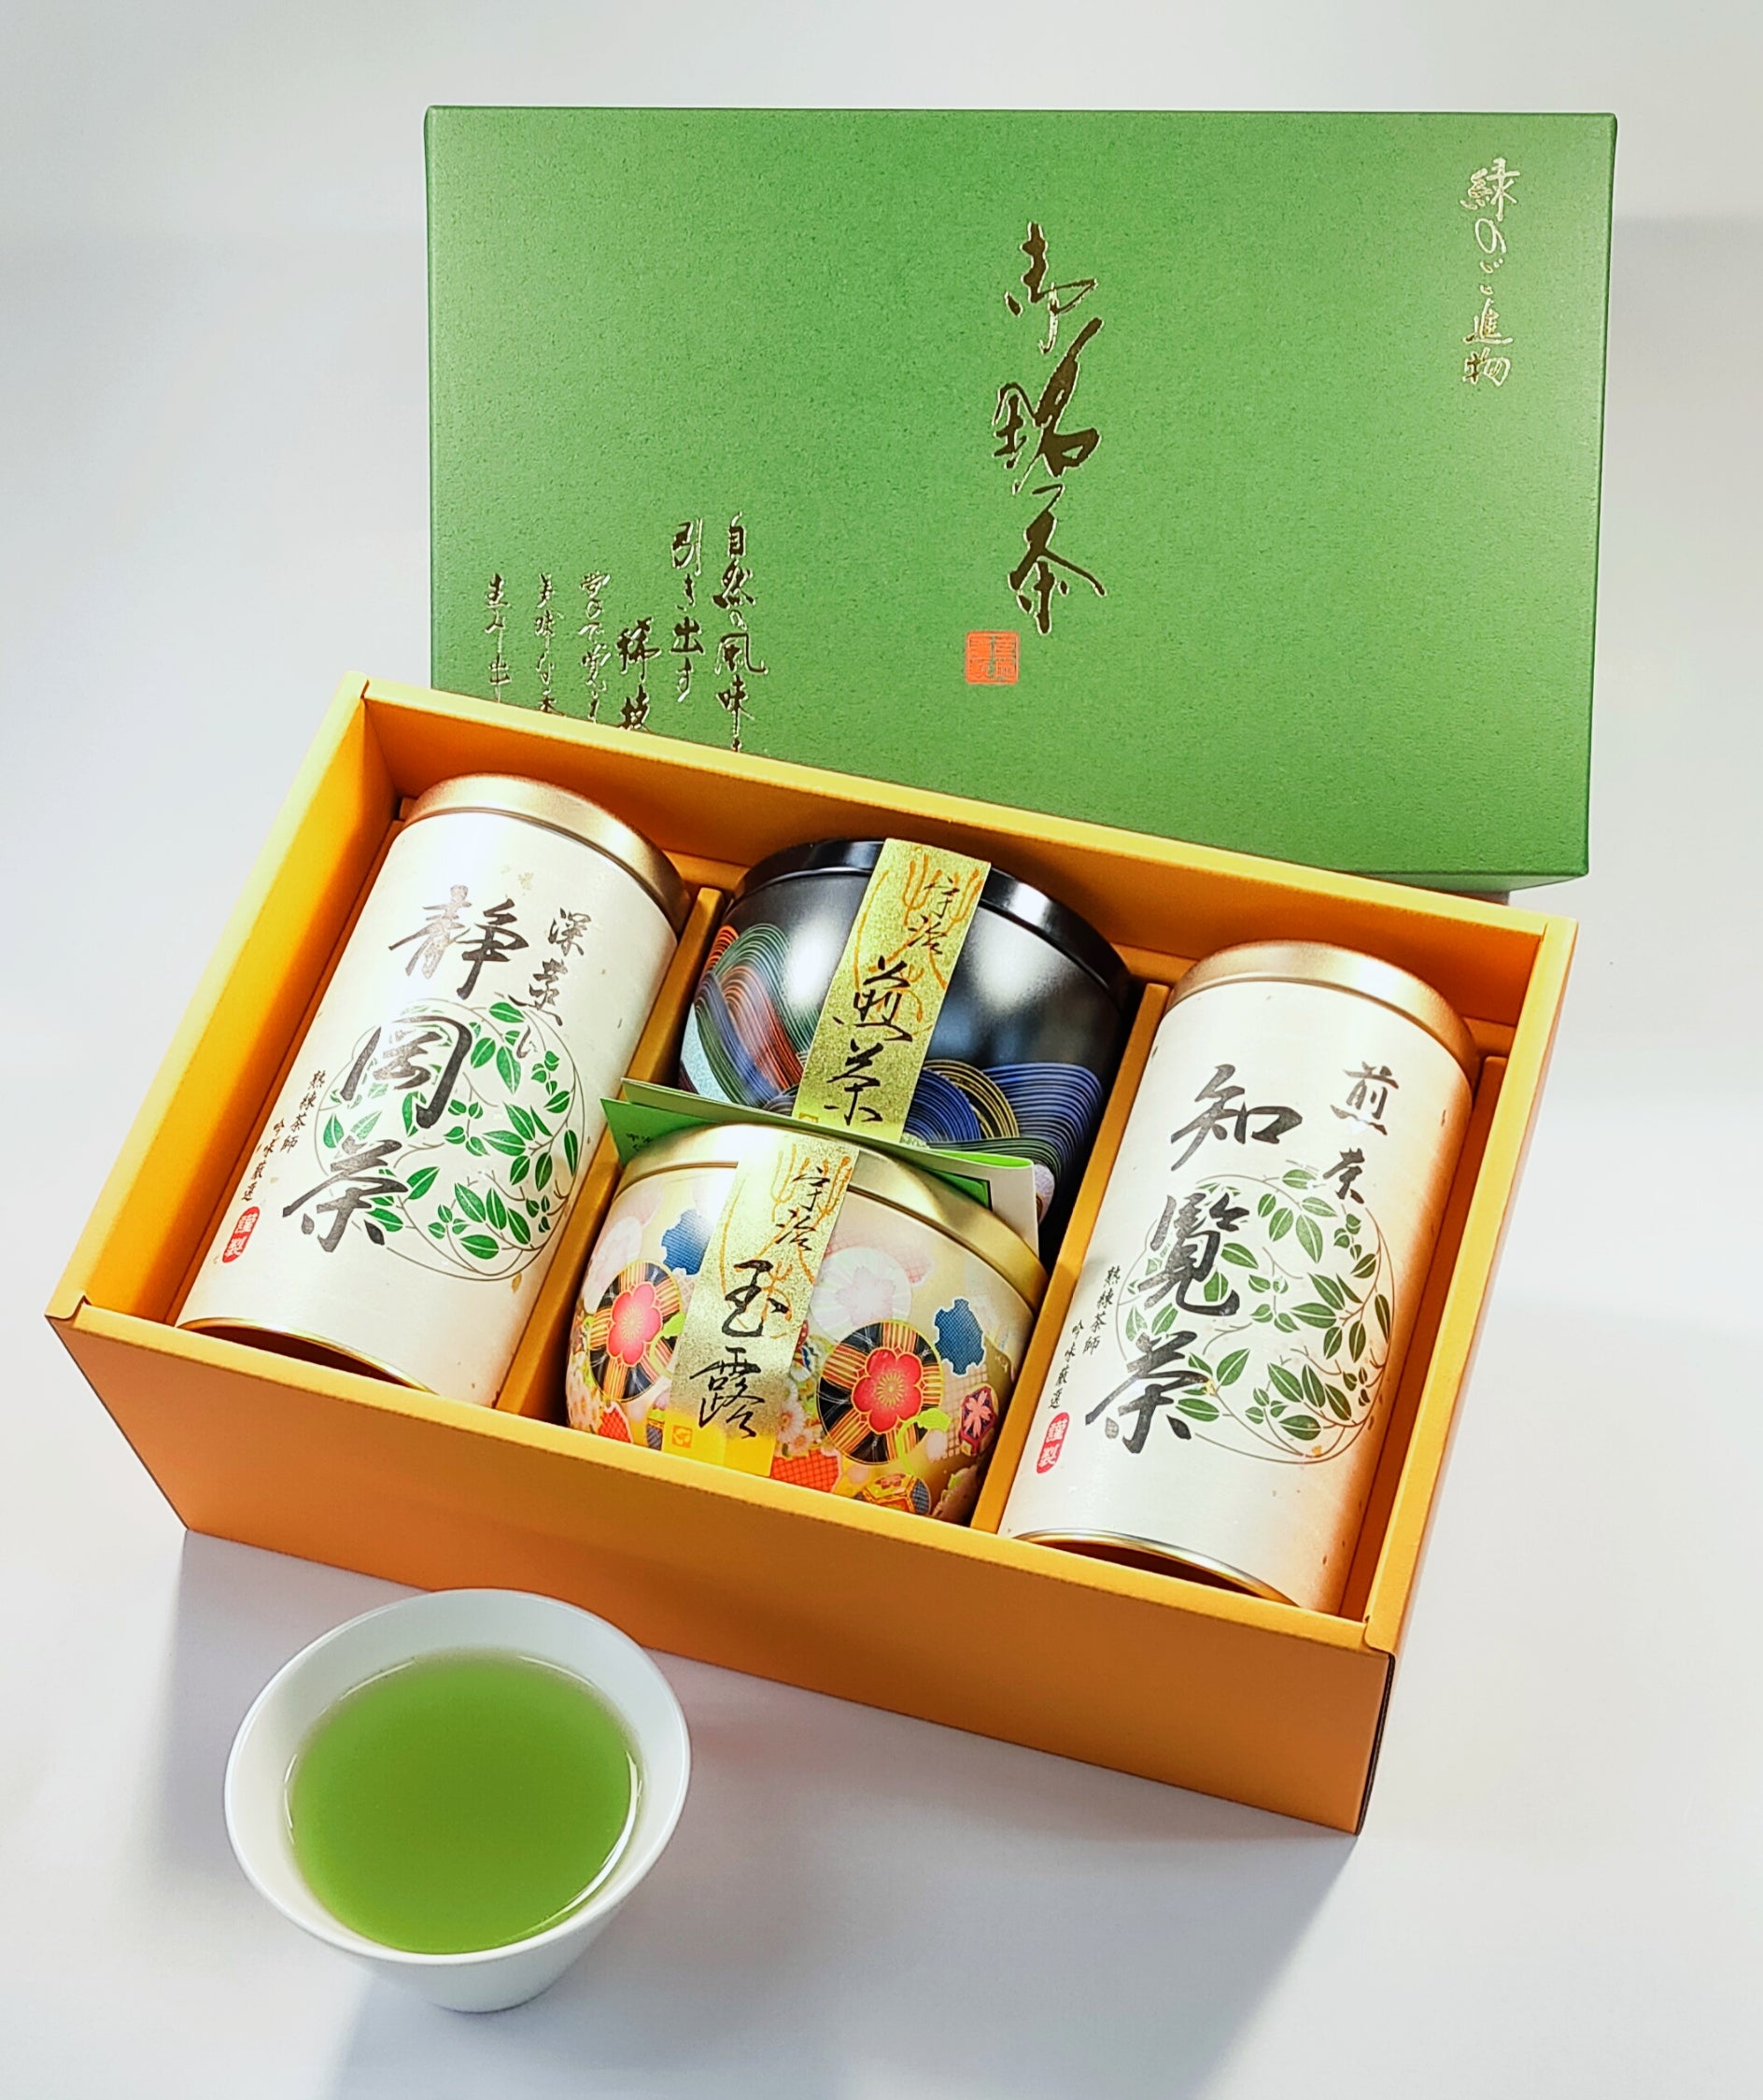 日本茶ギフト 玉露・煎茶・かりがね 詰合せ 可愛らしい茶缶にセット 